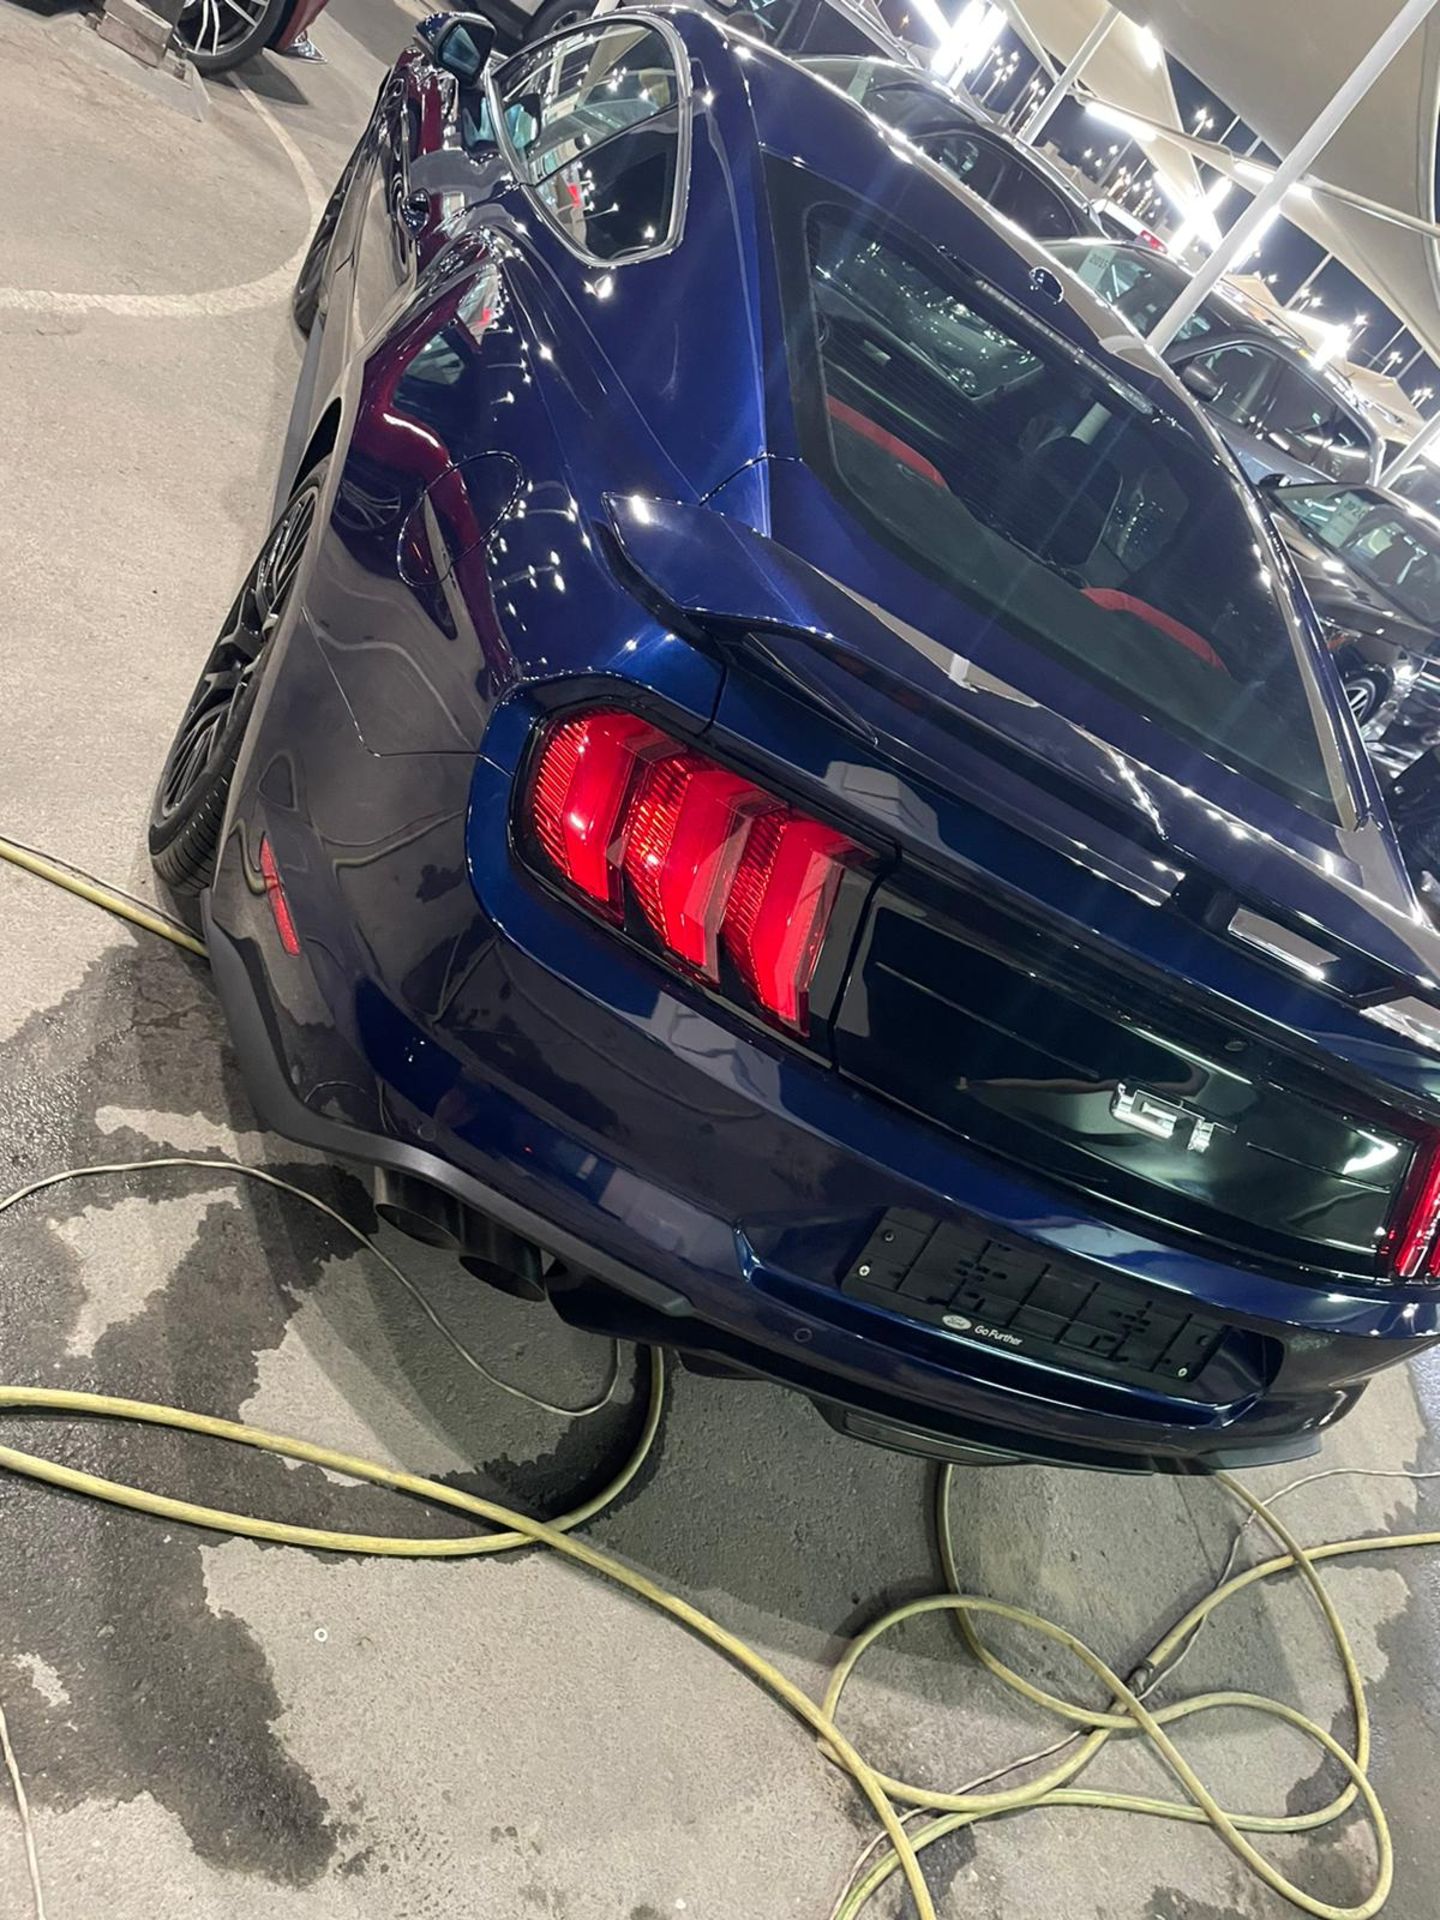 2019 mustang gt 5.0 V8 Shelby body kit 15,000 km. Uk mid February. With nova *PLUS VAT* - Image 3 of 9